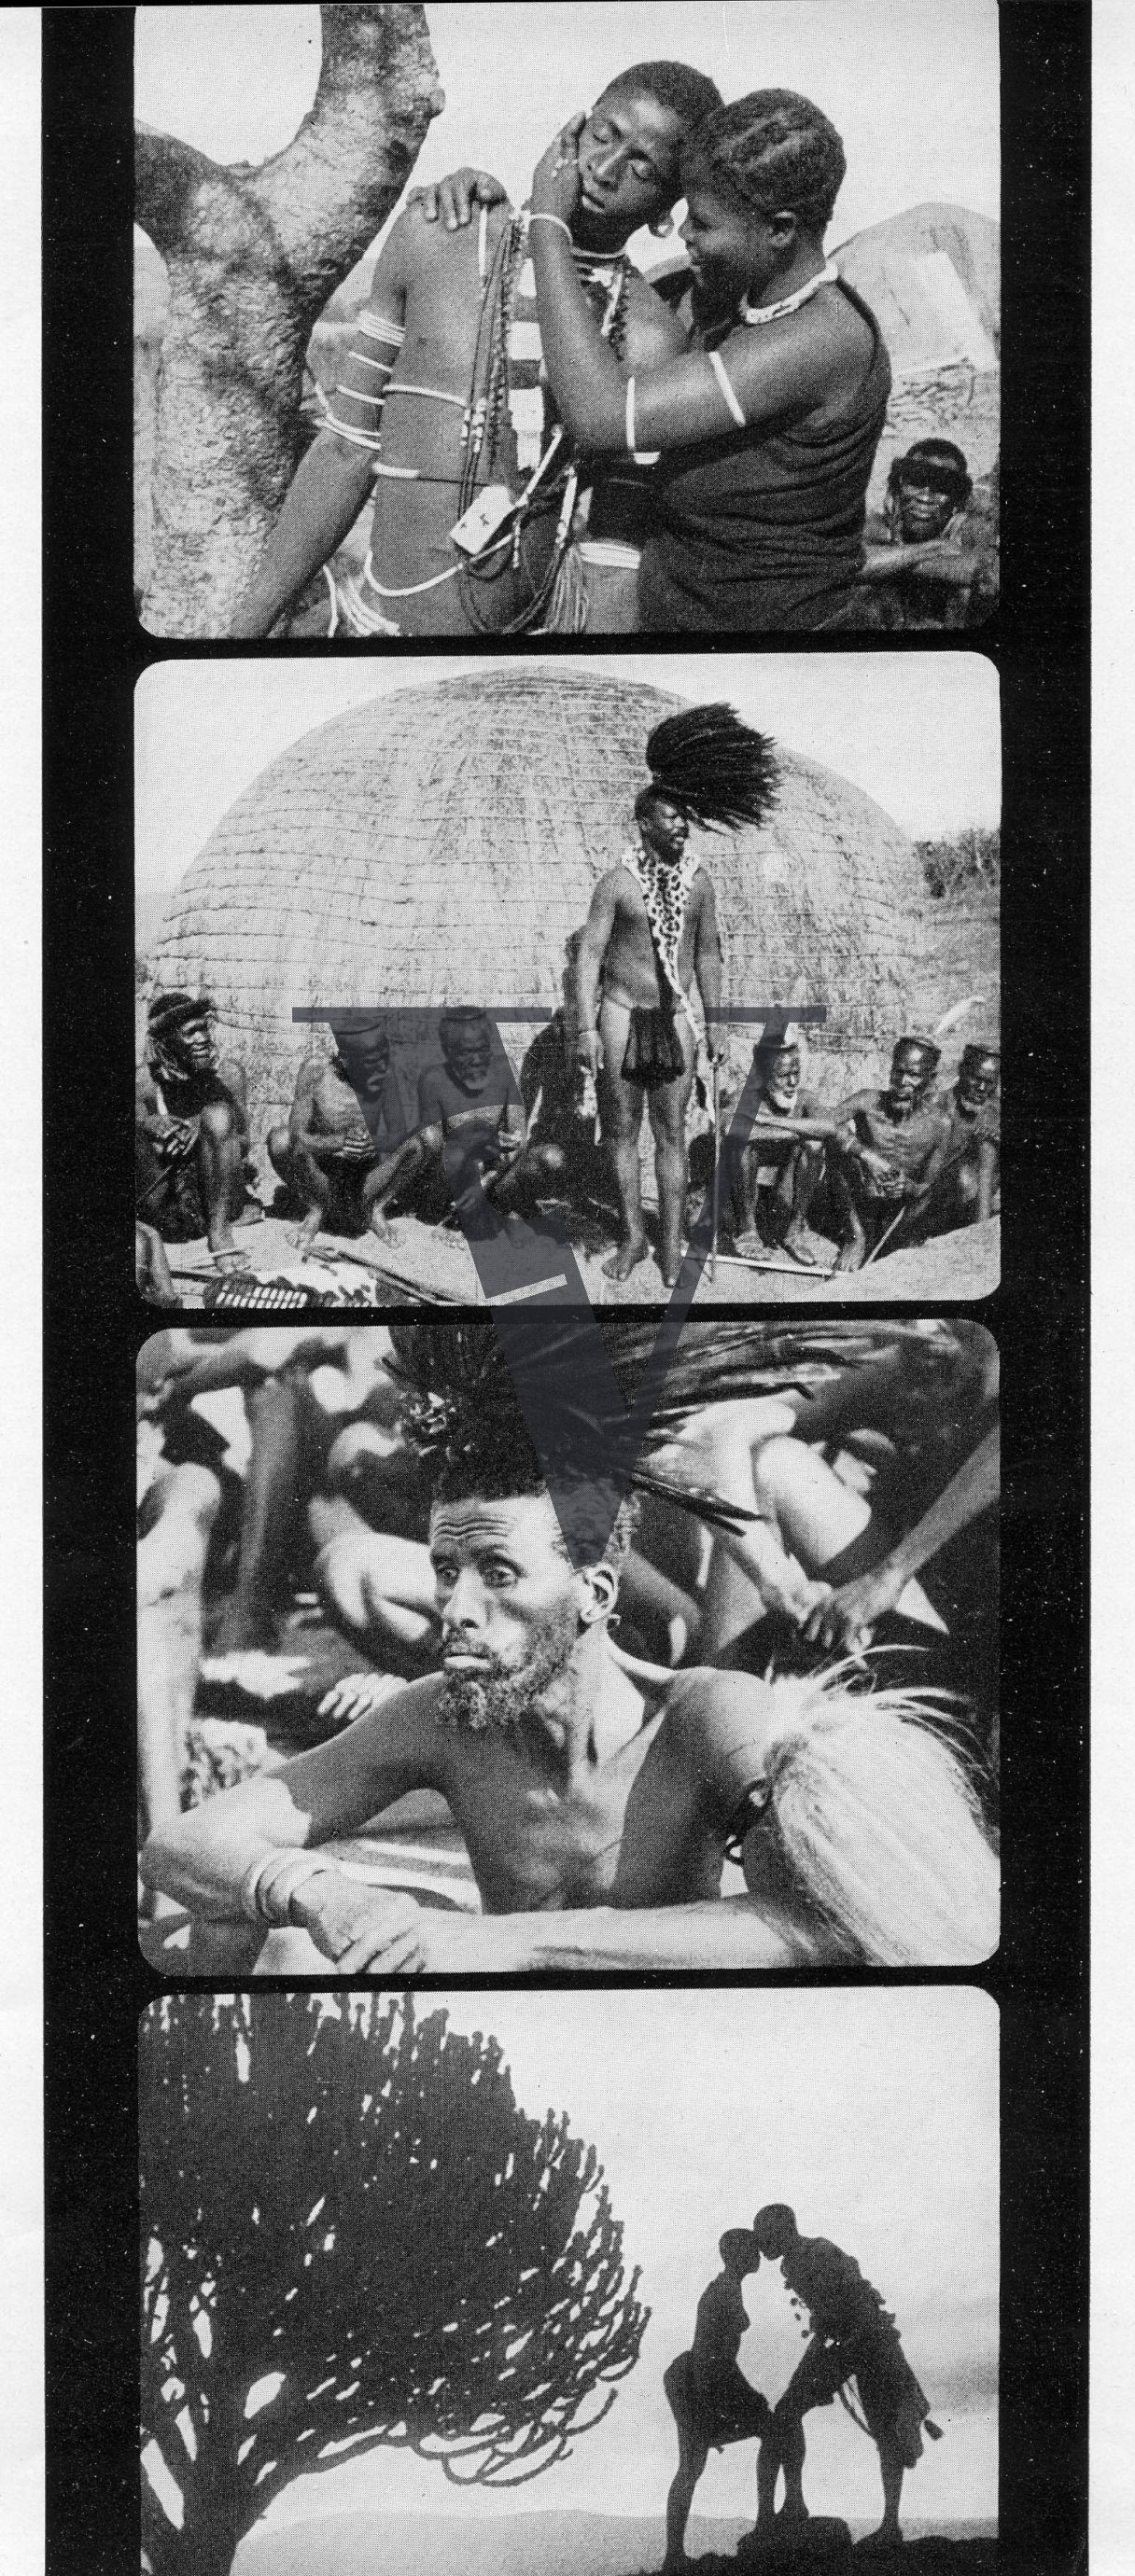 Siliva the Zulu, Production still, Fotogrammi Film Strip 1.